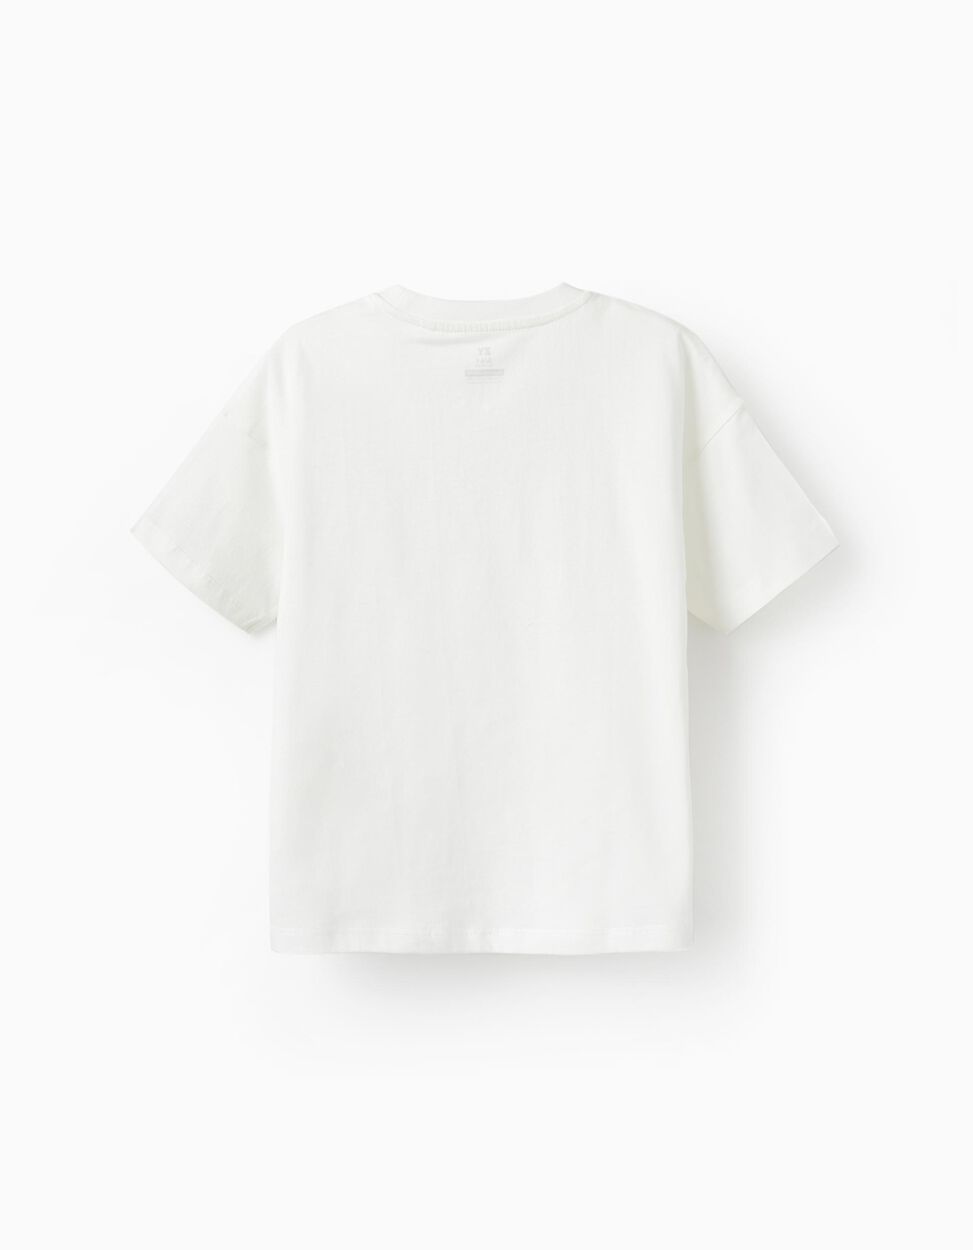 Comprar Online Camiseta de Algodón para Niño 'No Bad Waves', Blanco